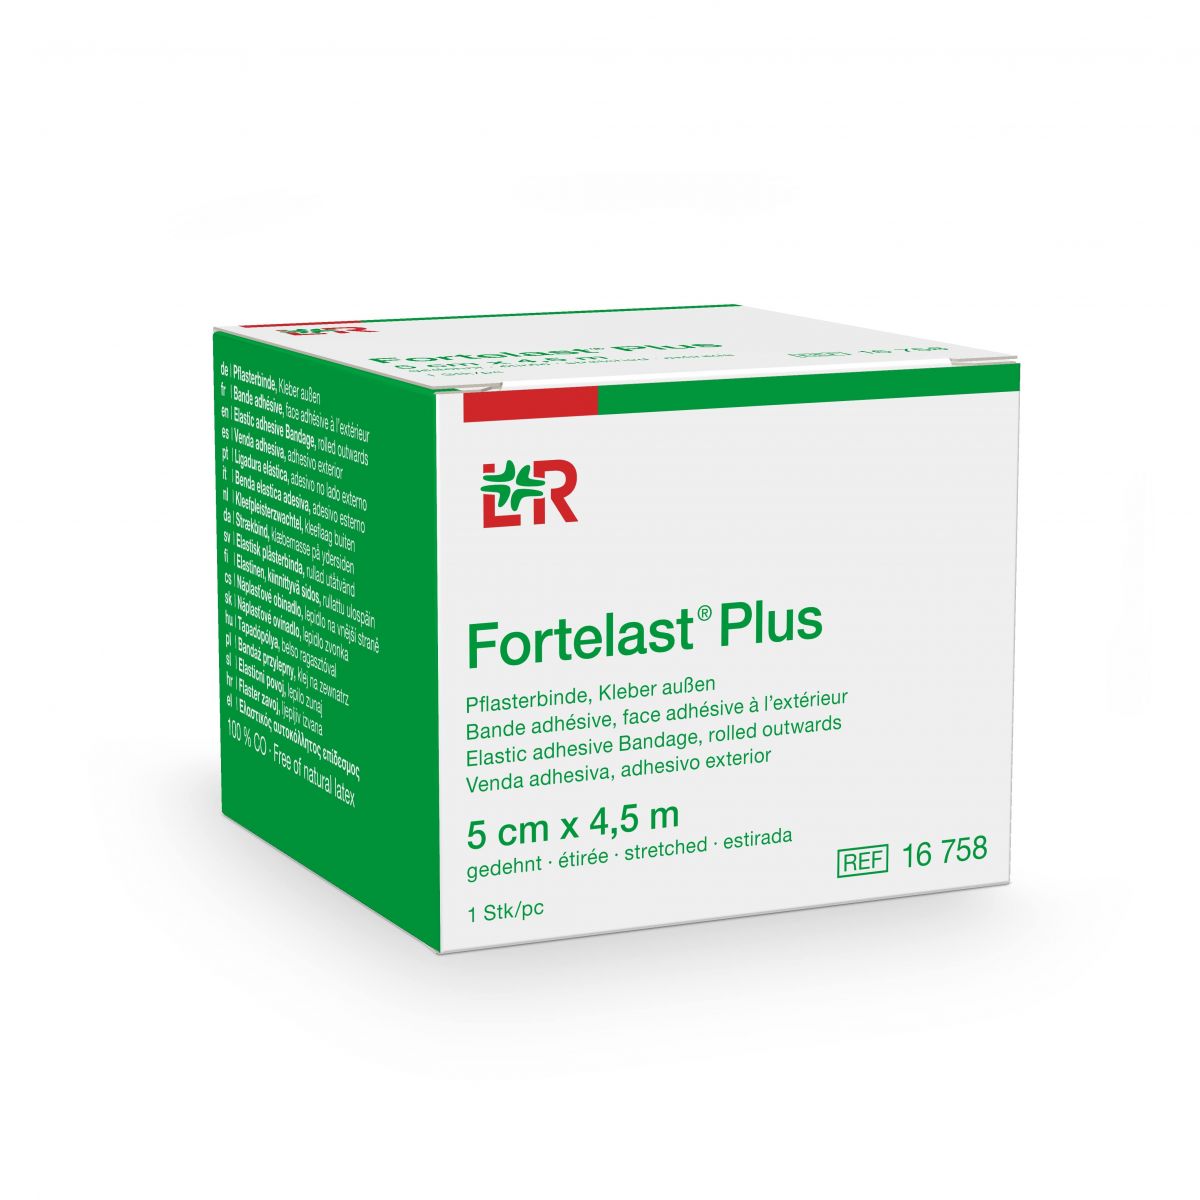 Fortelast® Plus 5 cm x 4,5 m - 1 pc